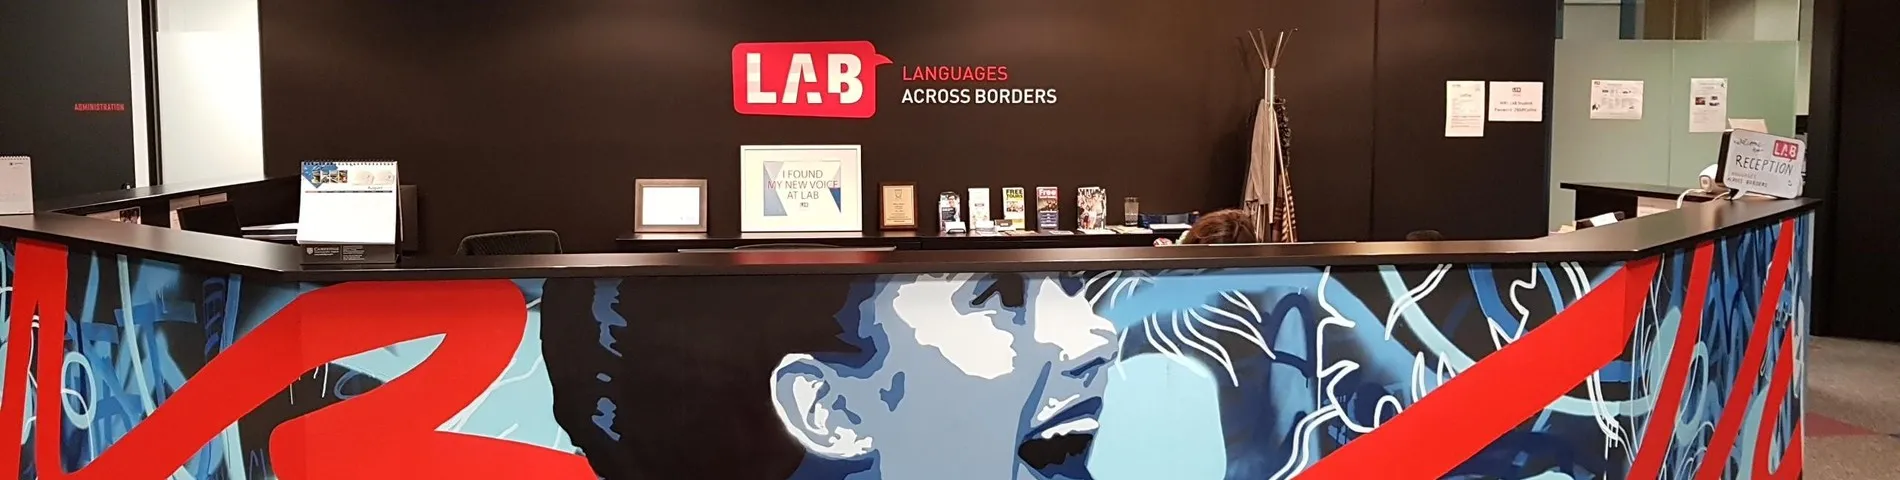 LAB - Languages Across Borders kuva 1